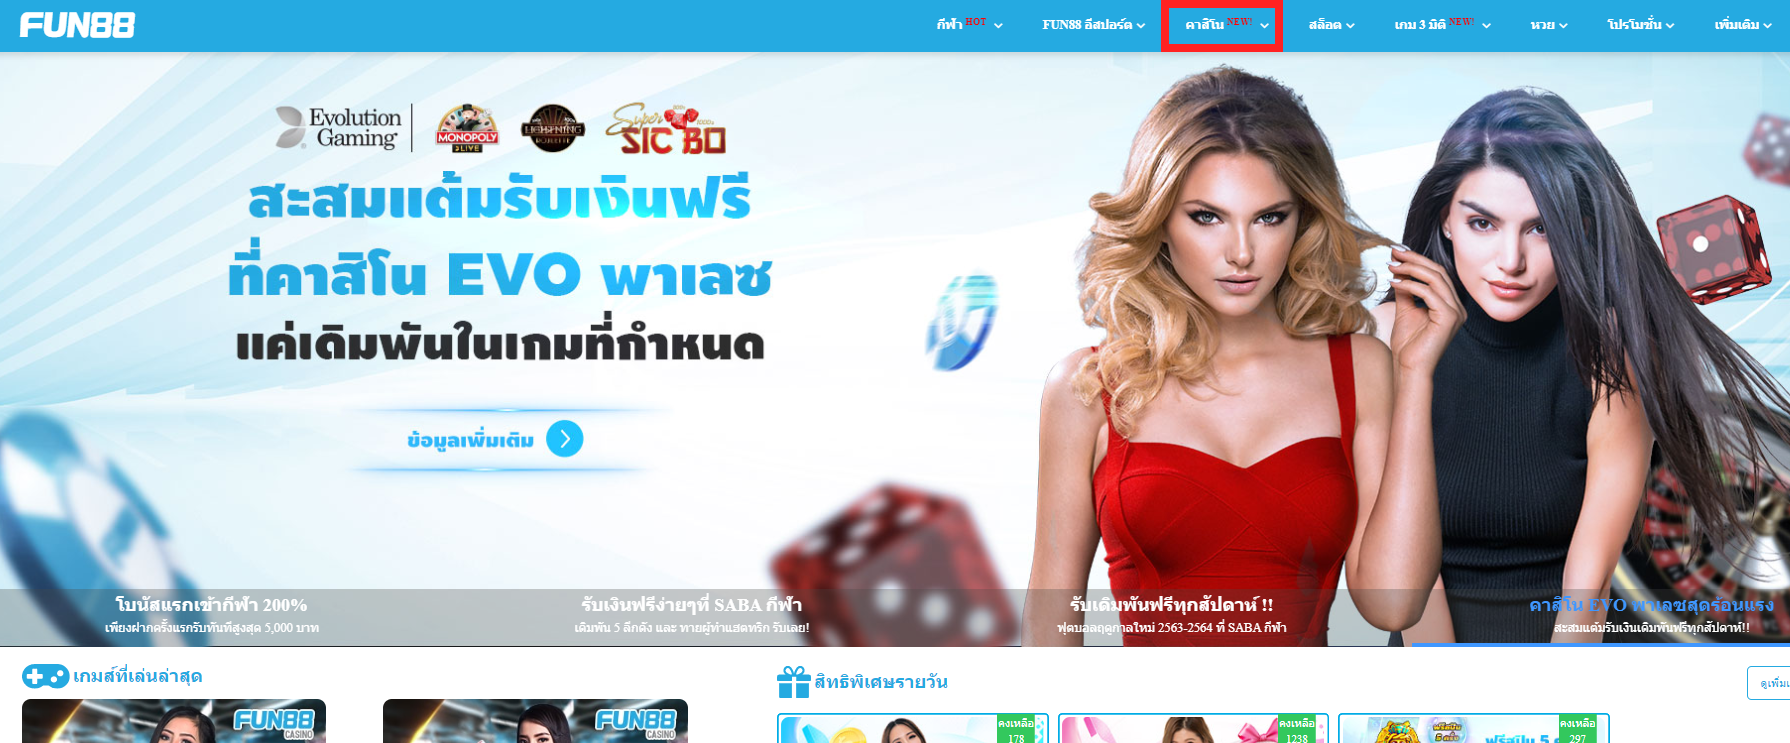 หน้าหลักเว็บไซต์ Fun88 - ไพ่ เสือ มังกร